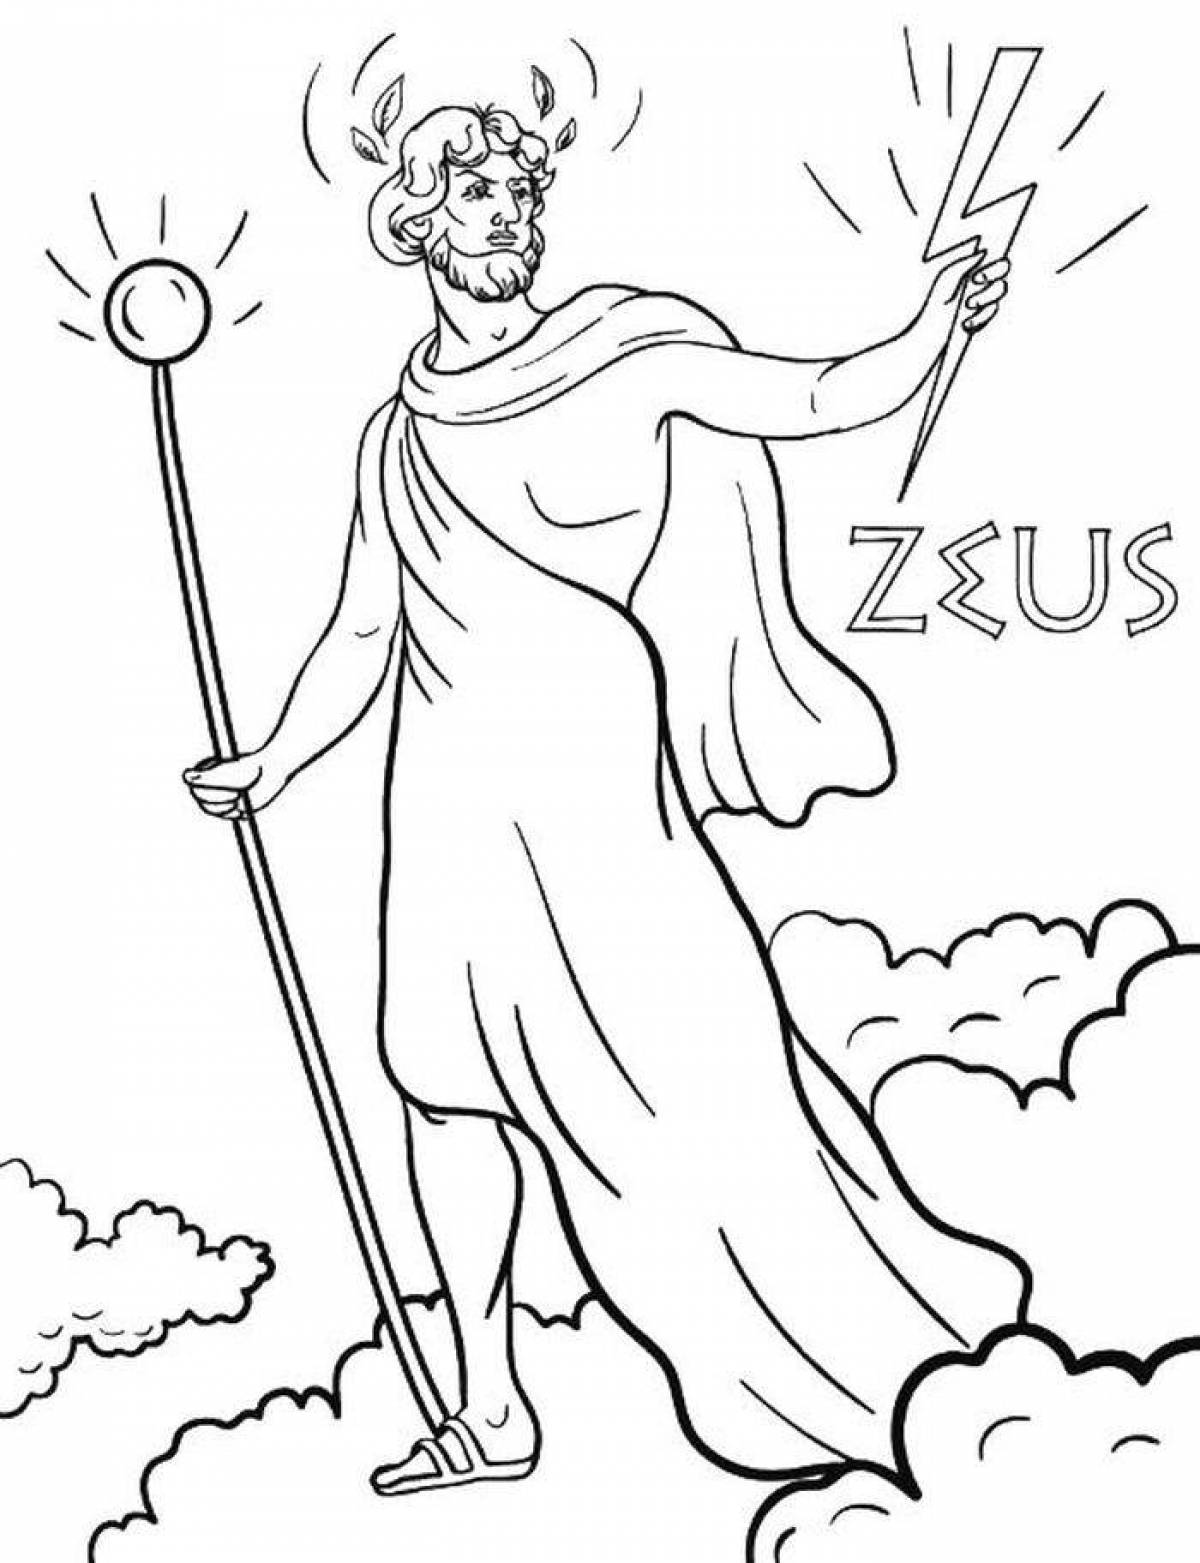 Regal Zeus coloring book